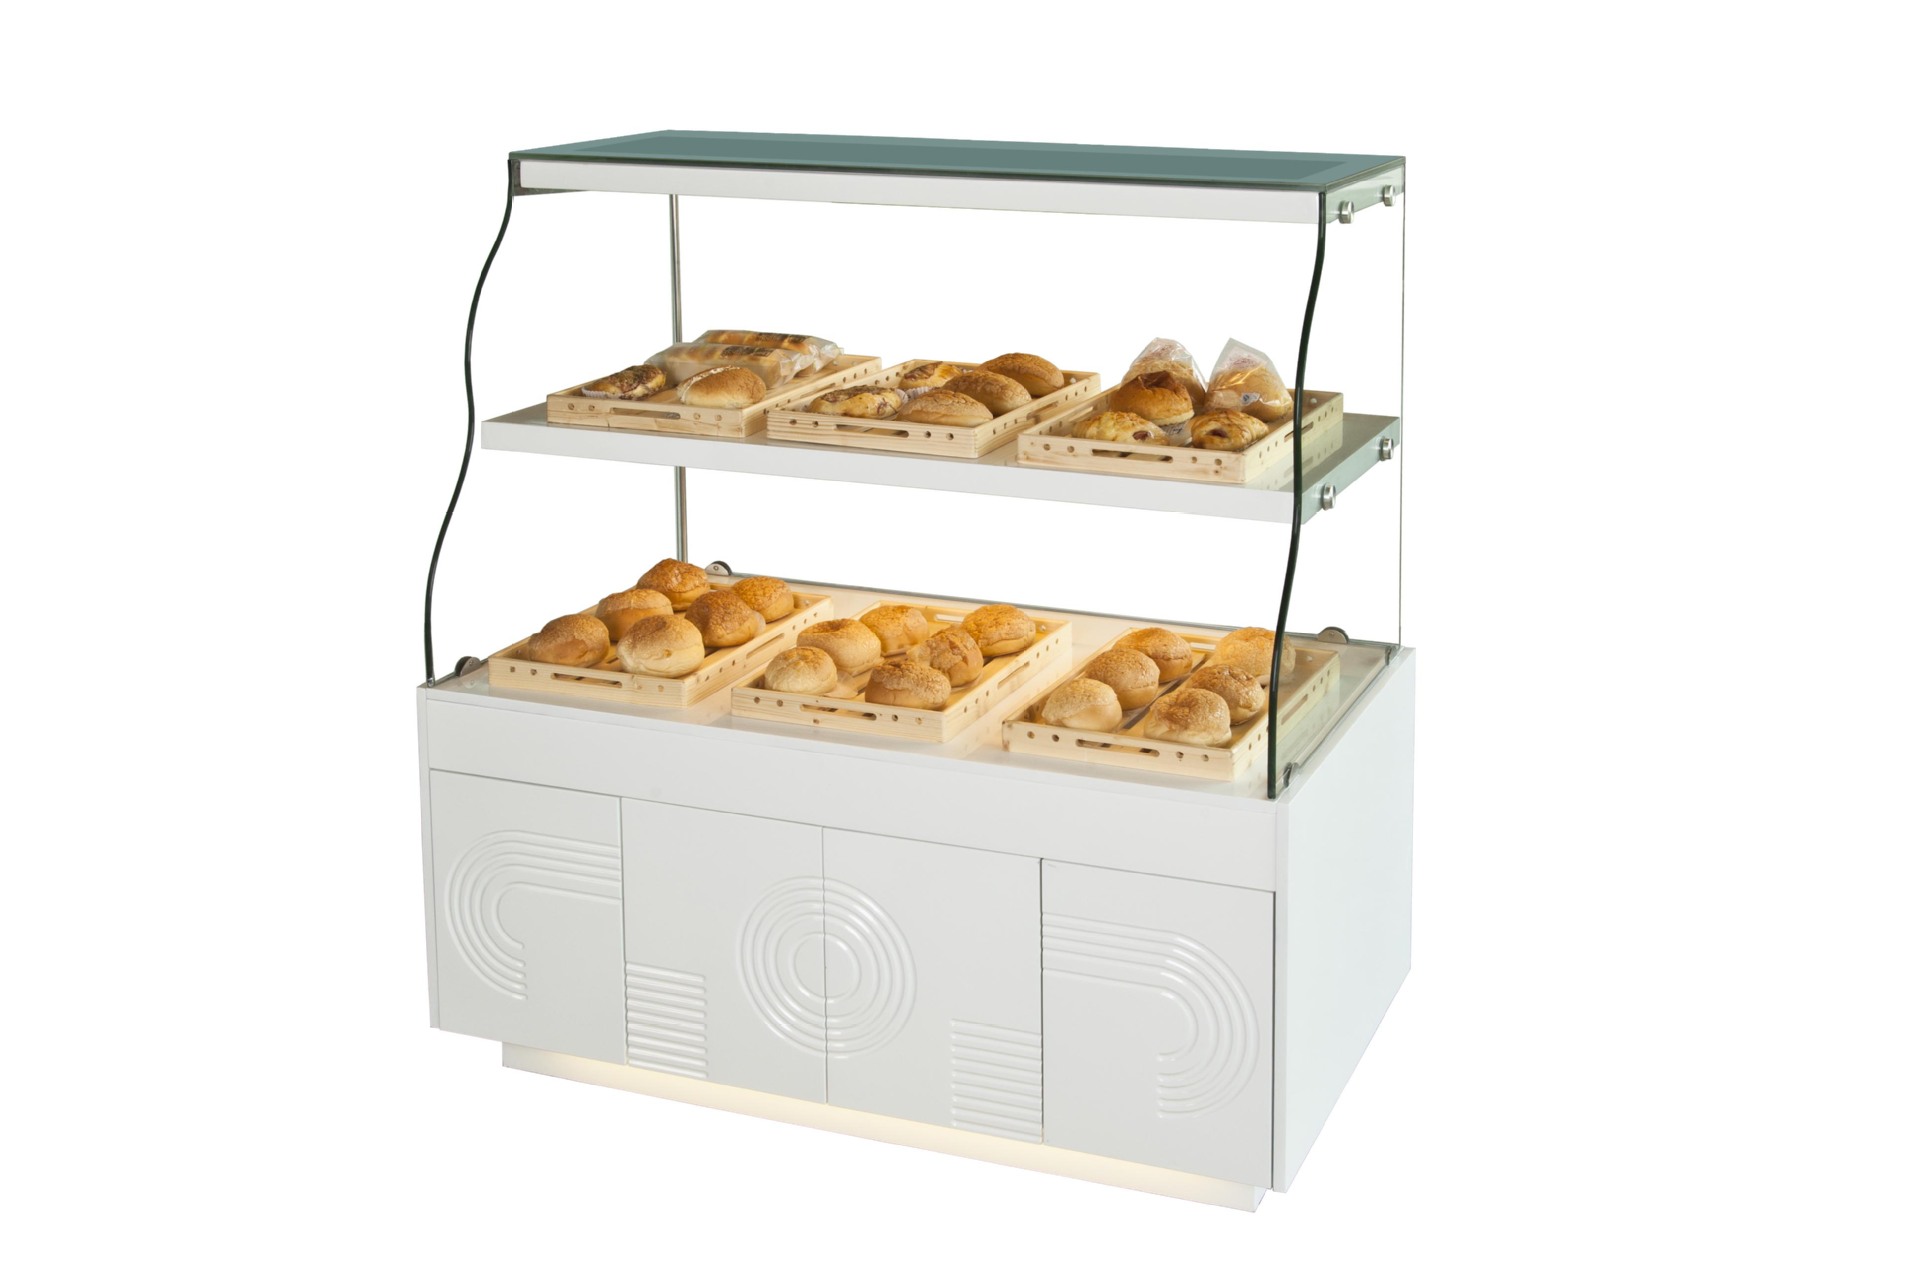 新款欧式面包展示柜,木质面包柜,抽屉式面包展示柜,面包货架